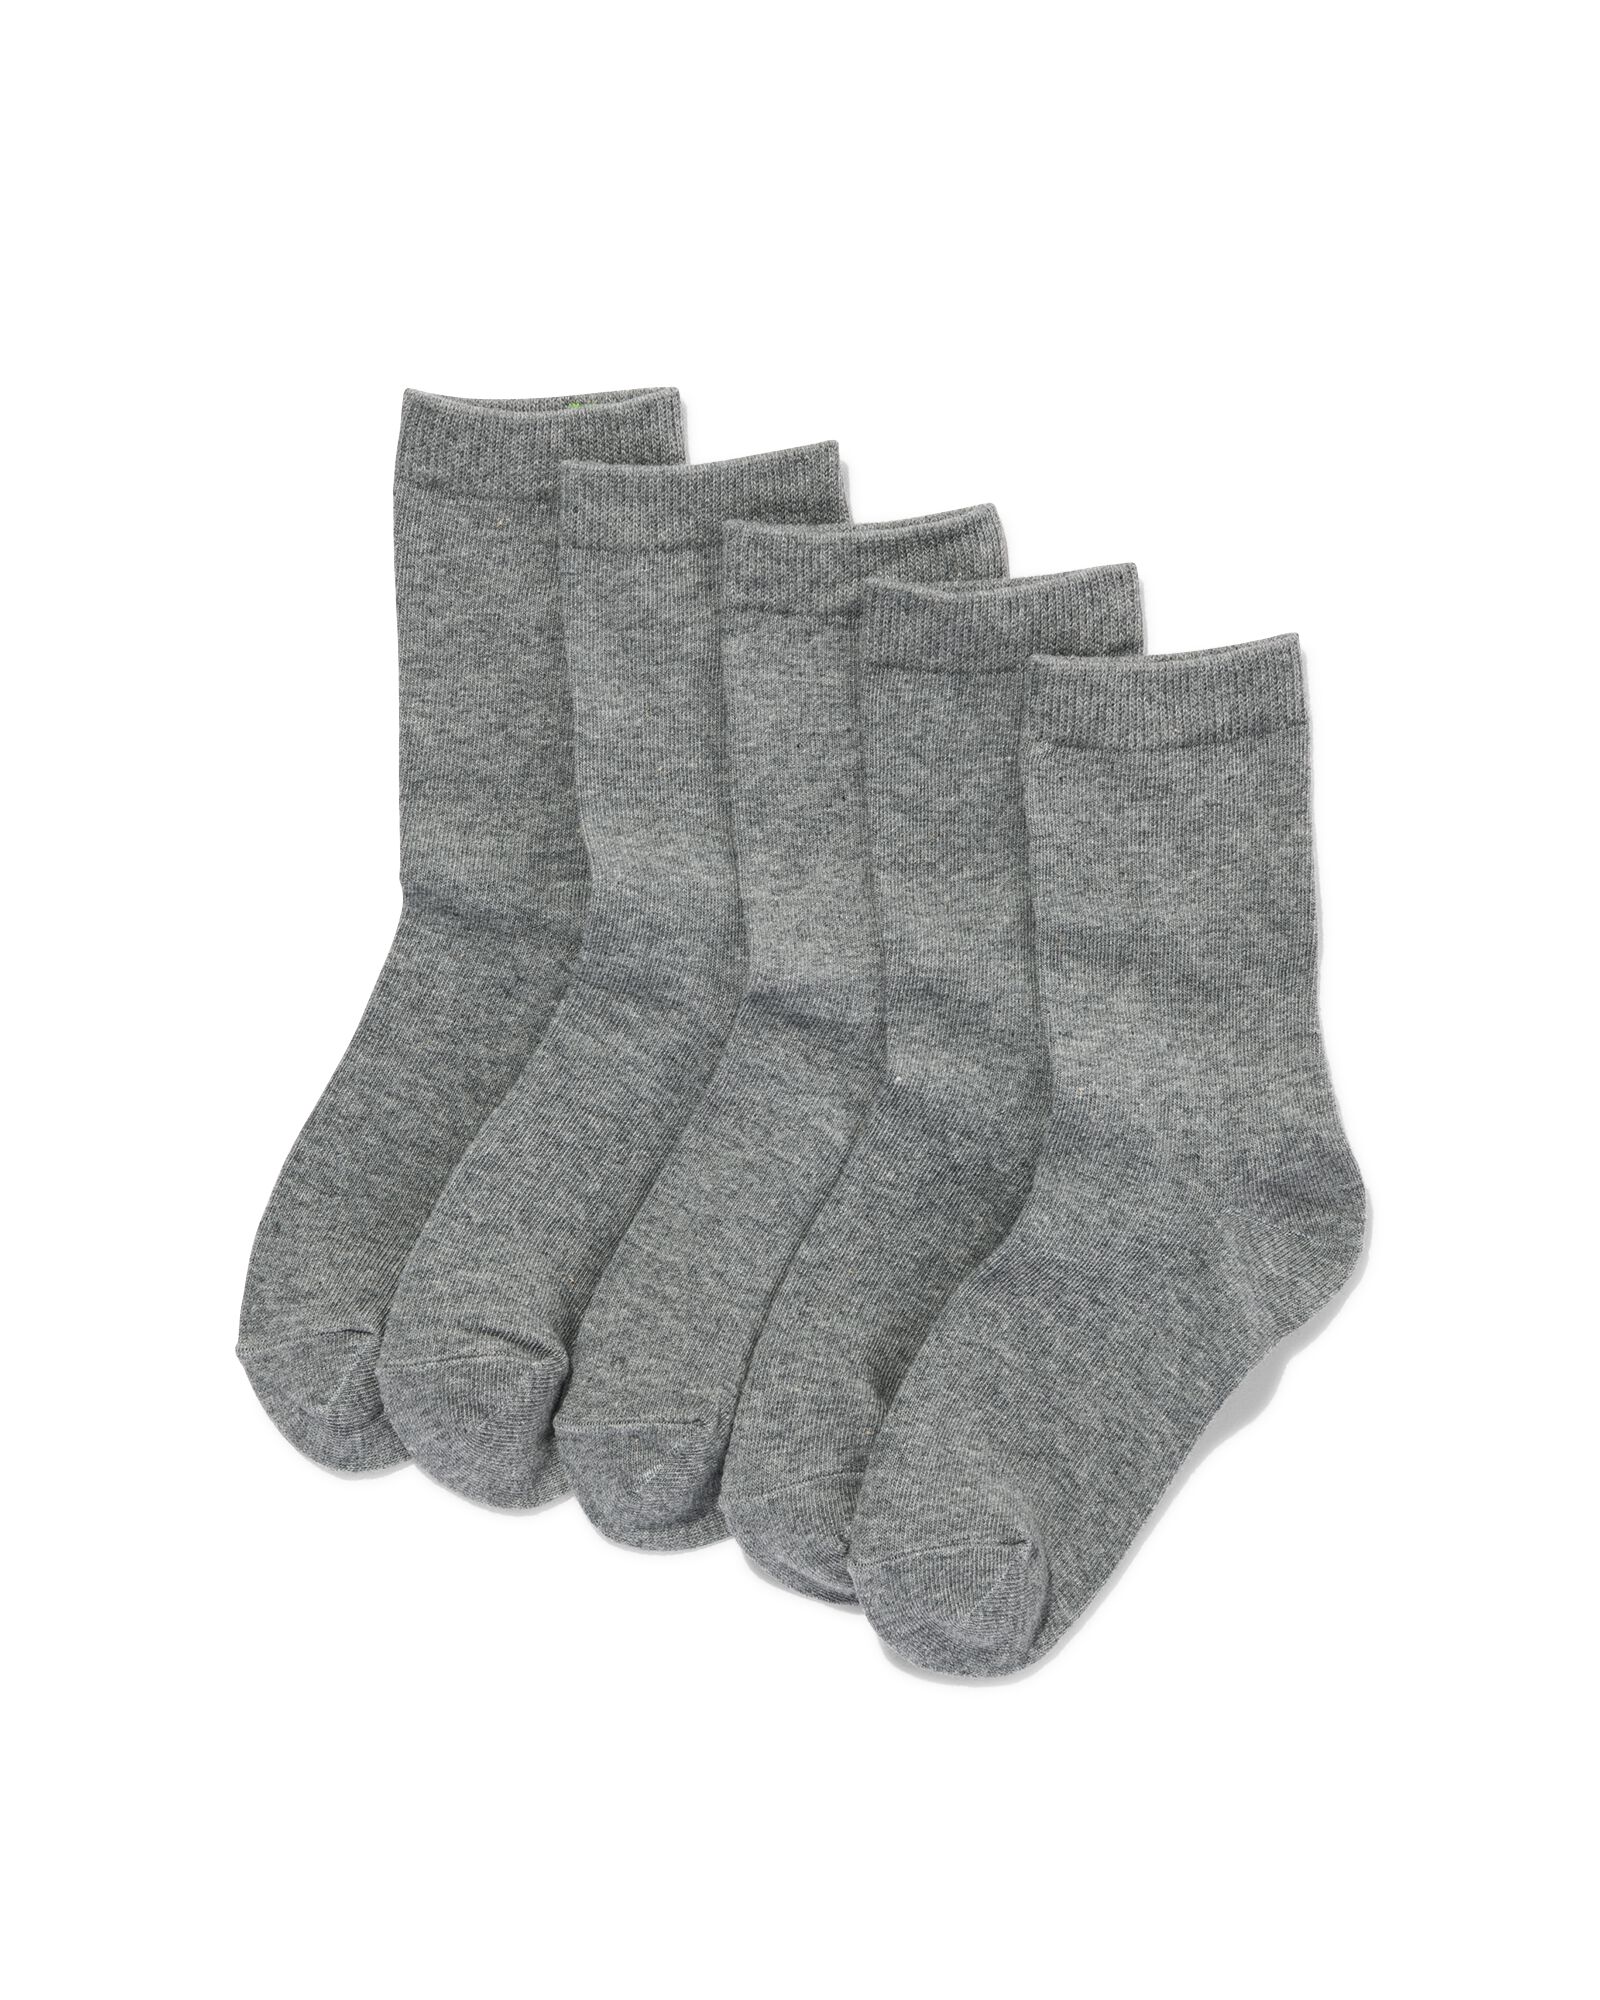 5 paires de chaussettes confort Billy, gris taille 43-46